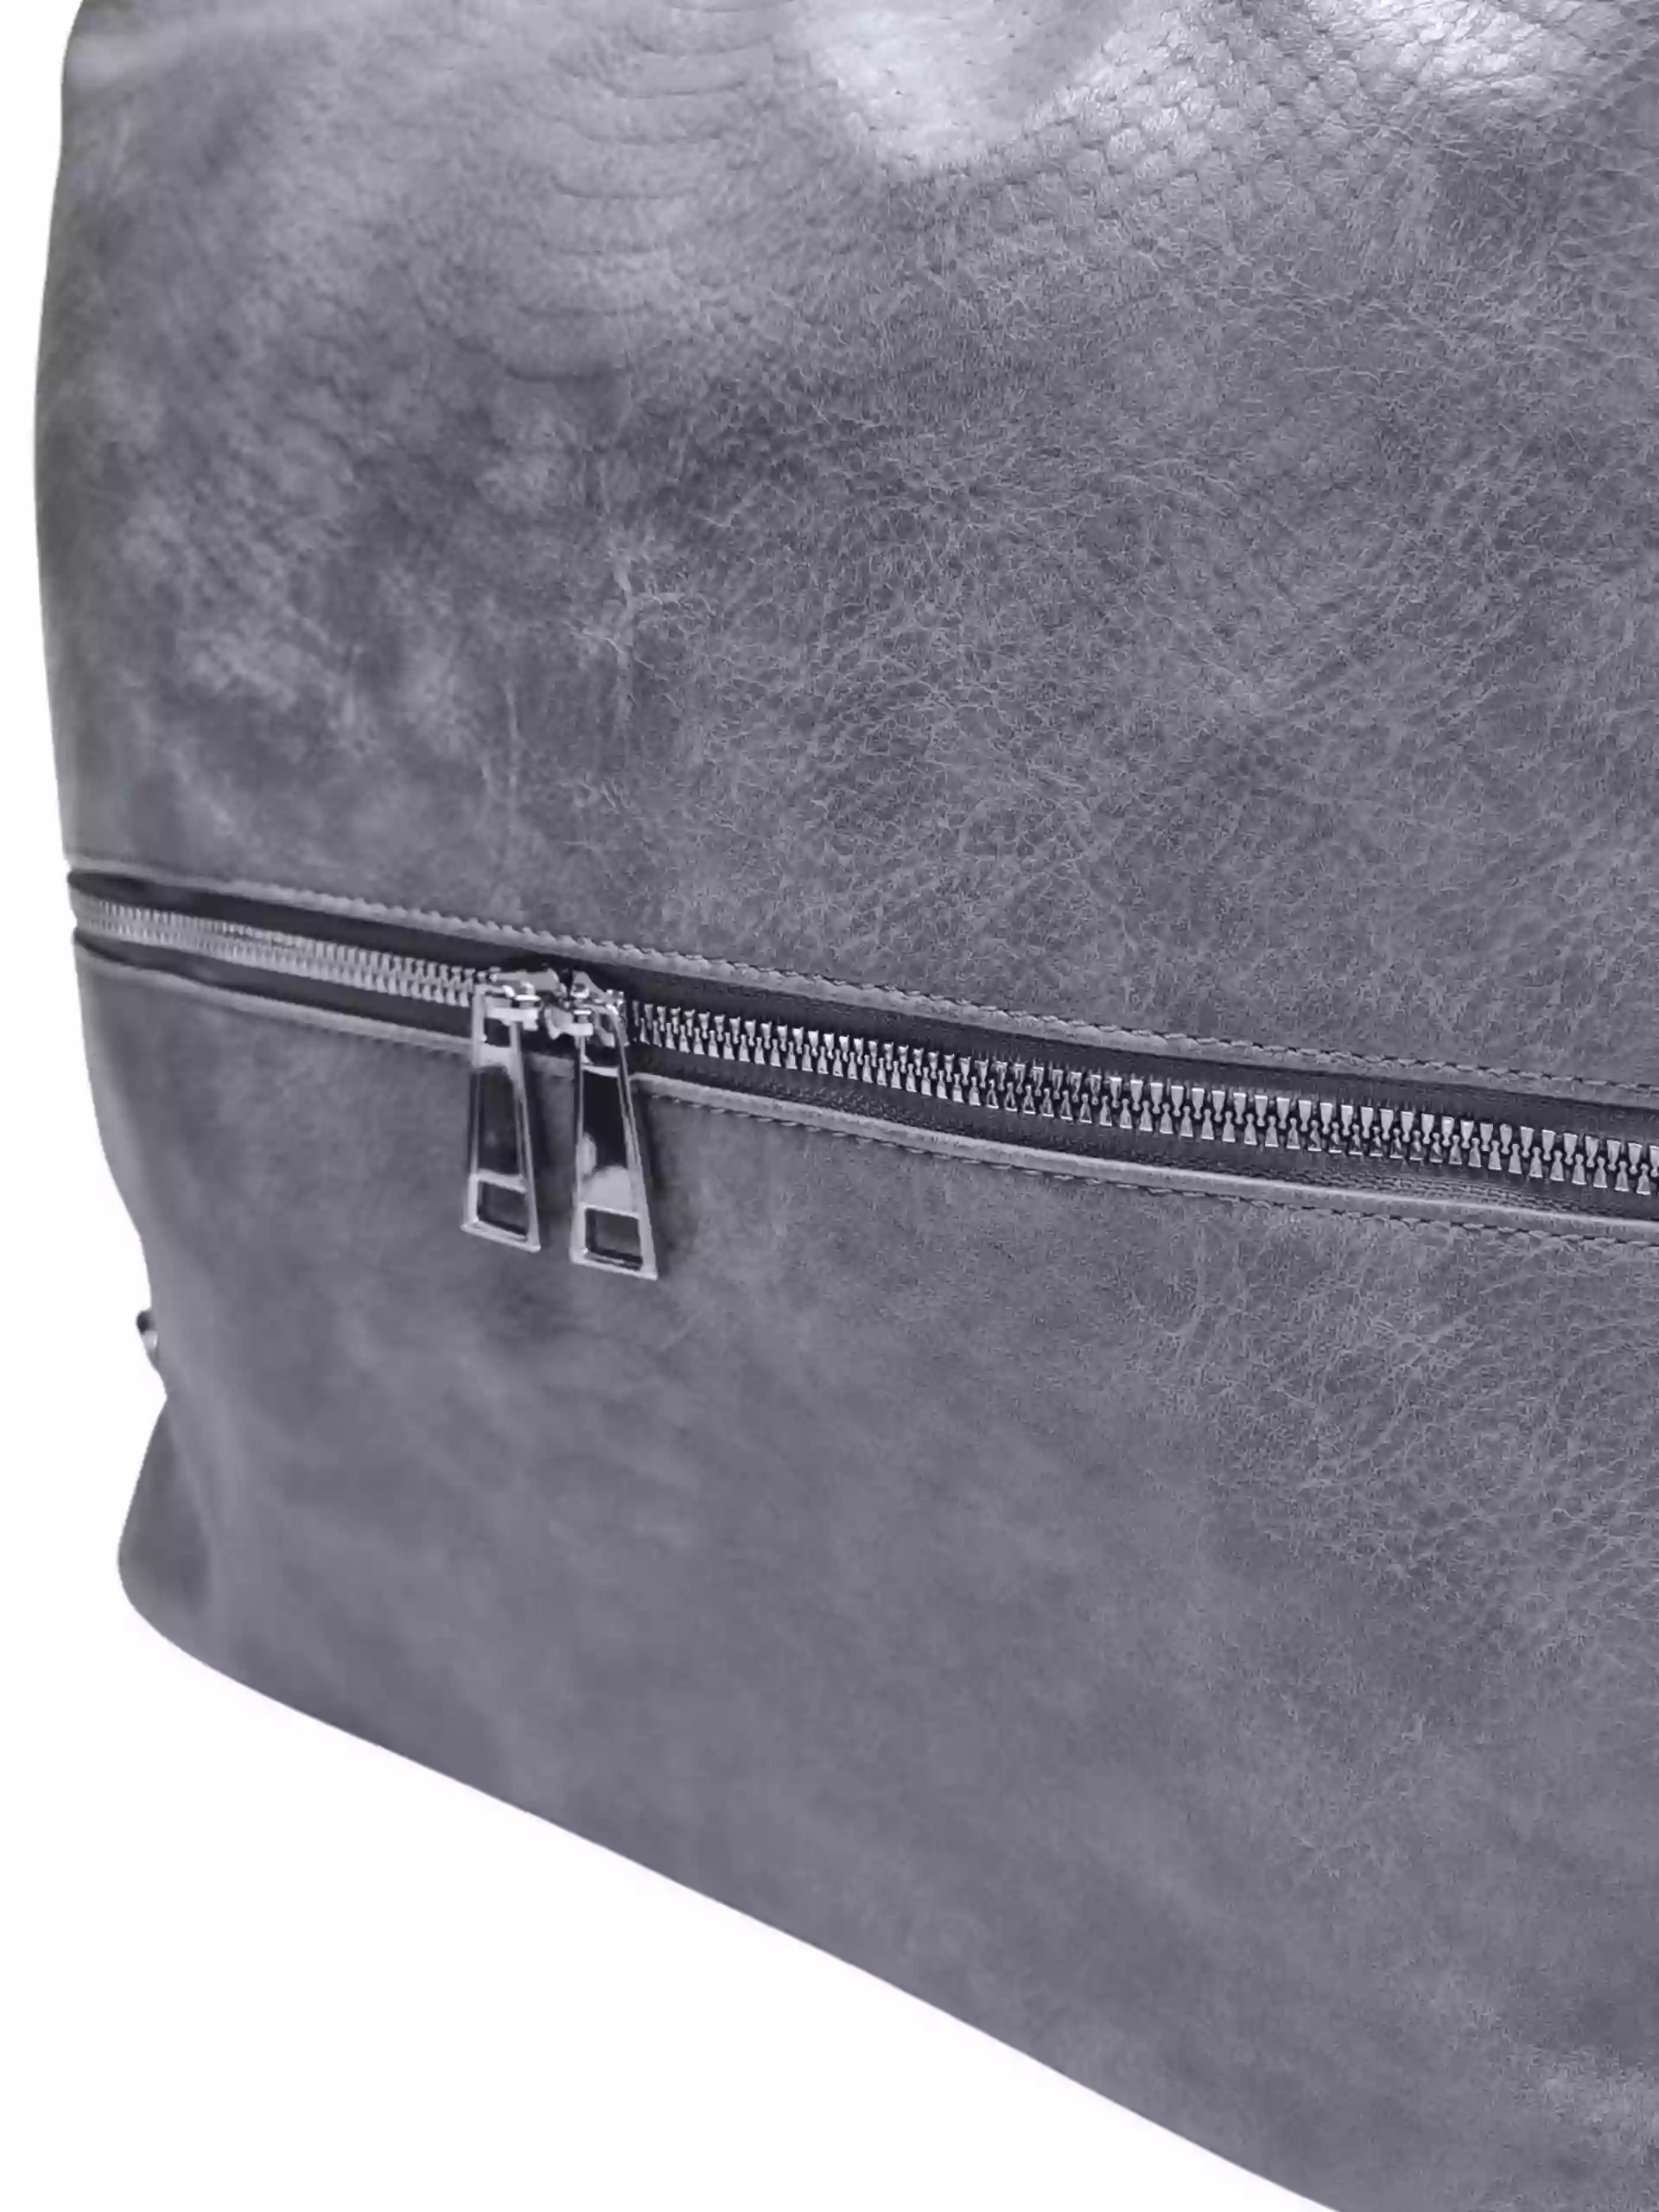 Moderní středně šedý kabelko-batoh z eko kůže, Tapple, H190010, detail kabelko-batohu 2v1